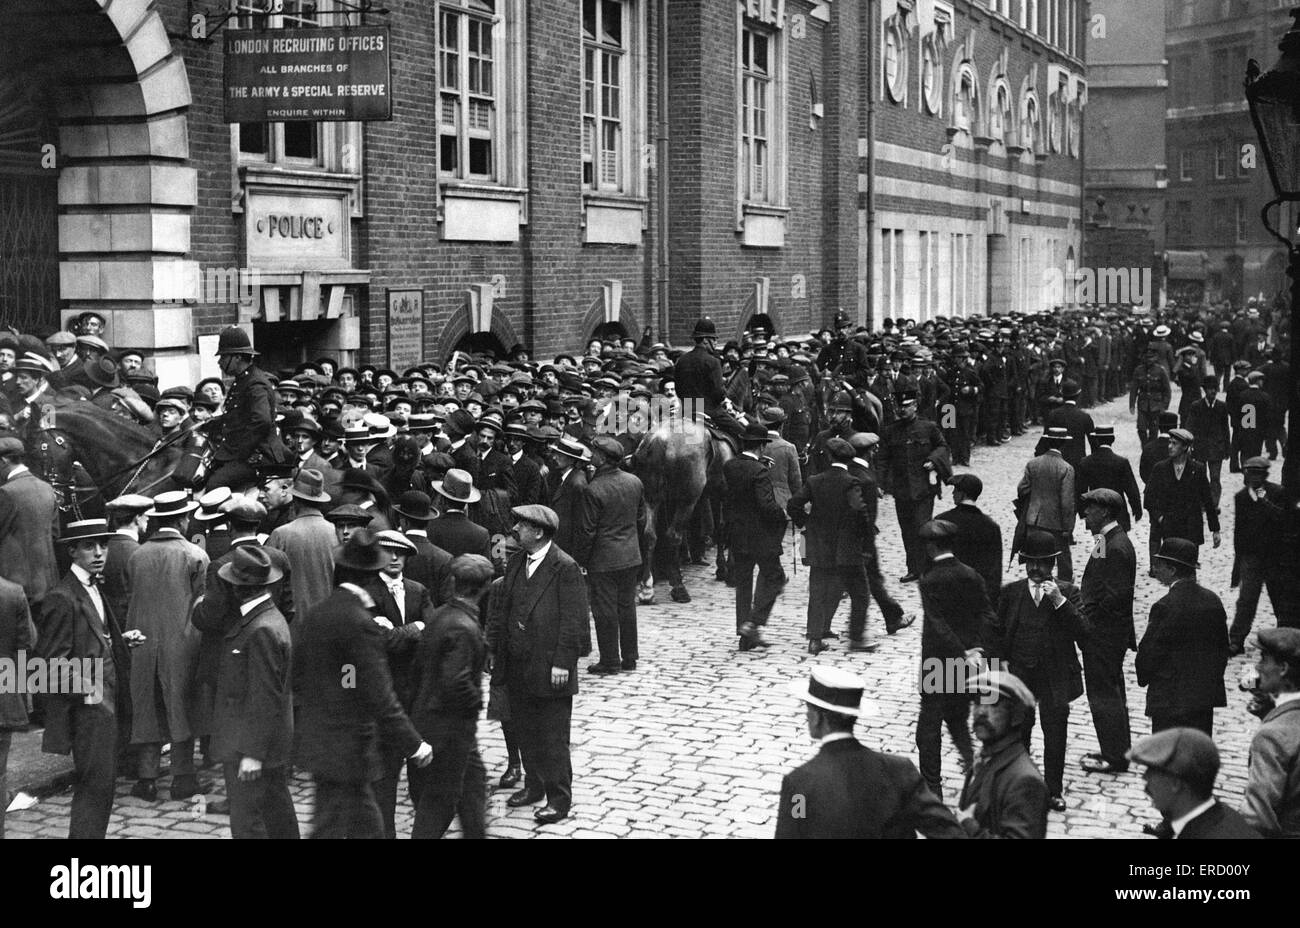 Stazione di reclutamento a Scotland Yard, Londra assediata dai sarebbe reclute durante la prima settimana della Prima Guerra Mondiale. La folla era così grande polizia montata erano necessarie per mantenere la folla a controllare. 6 agosto 1914 Foto Stock